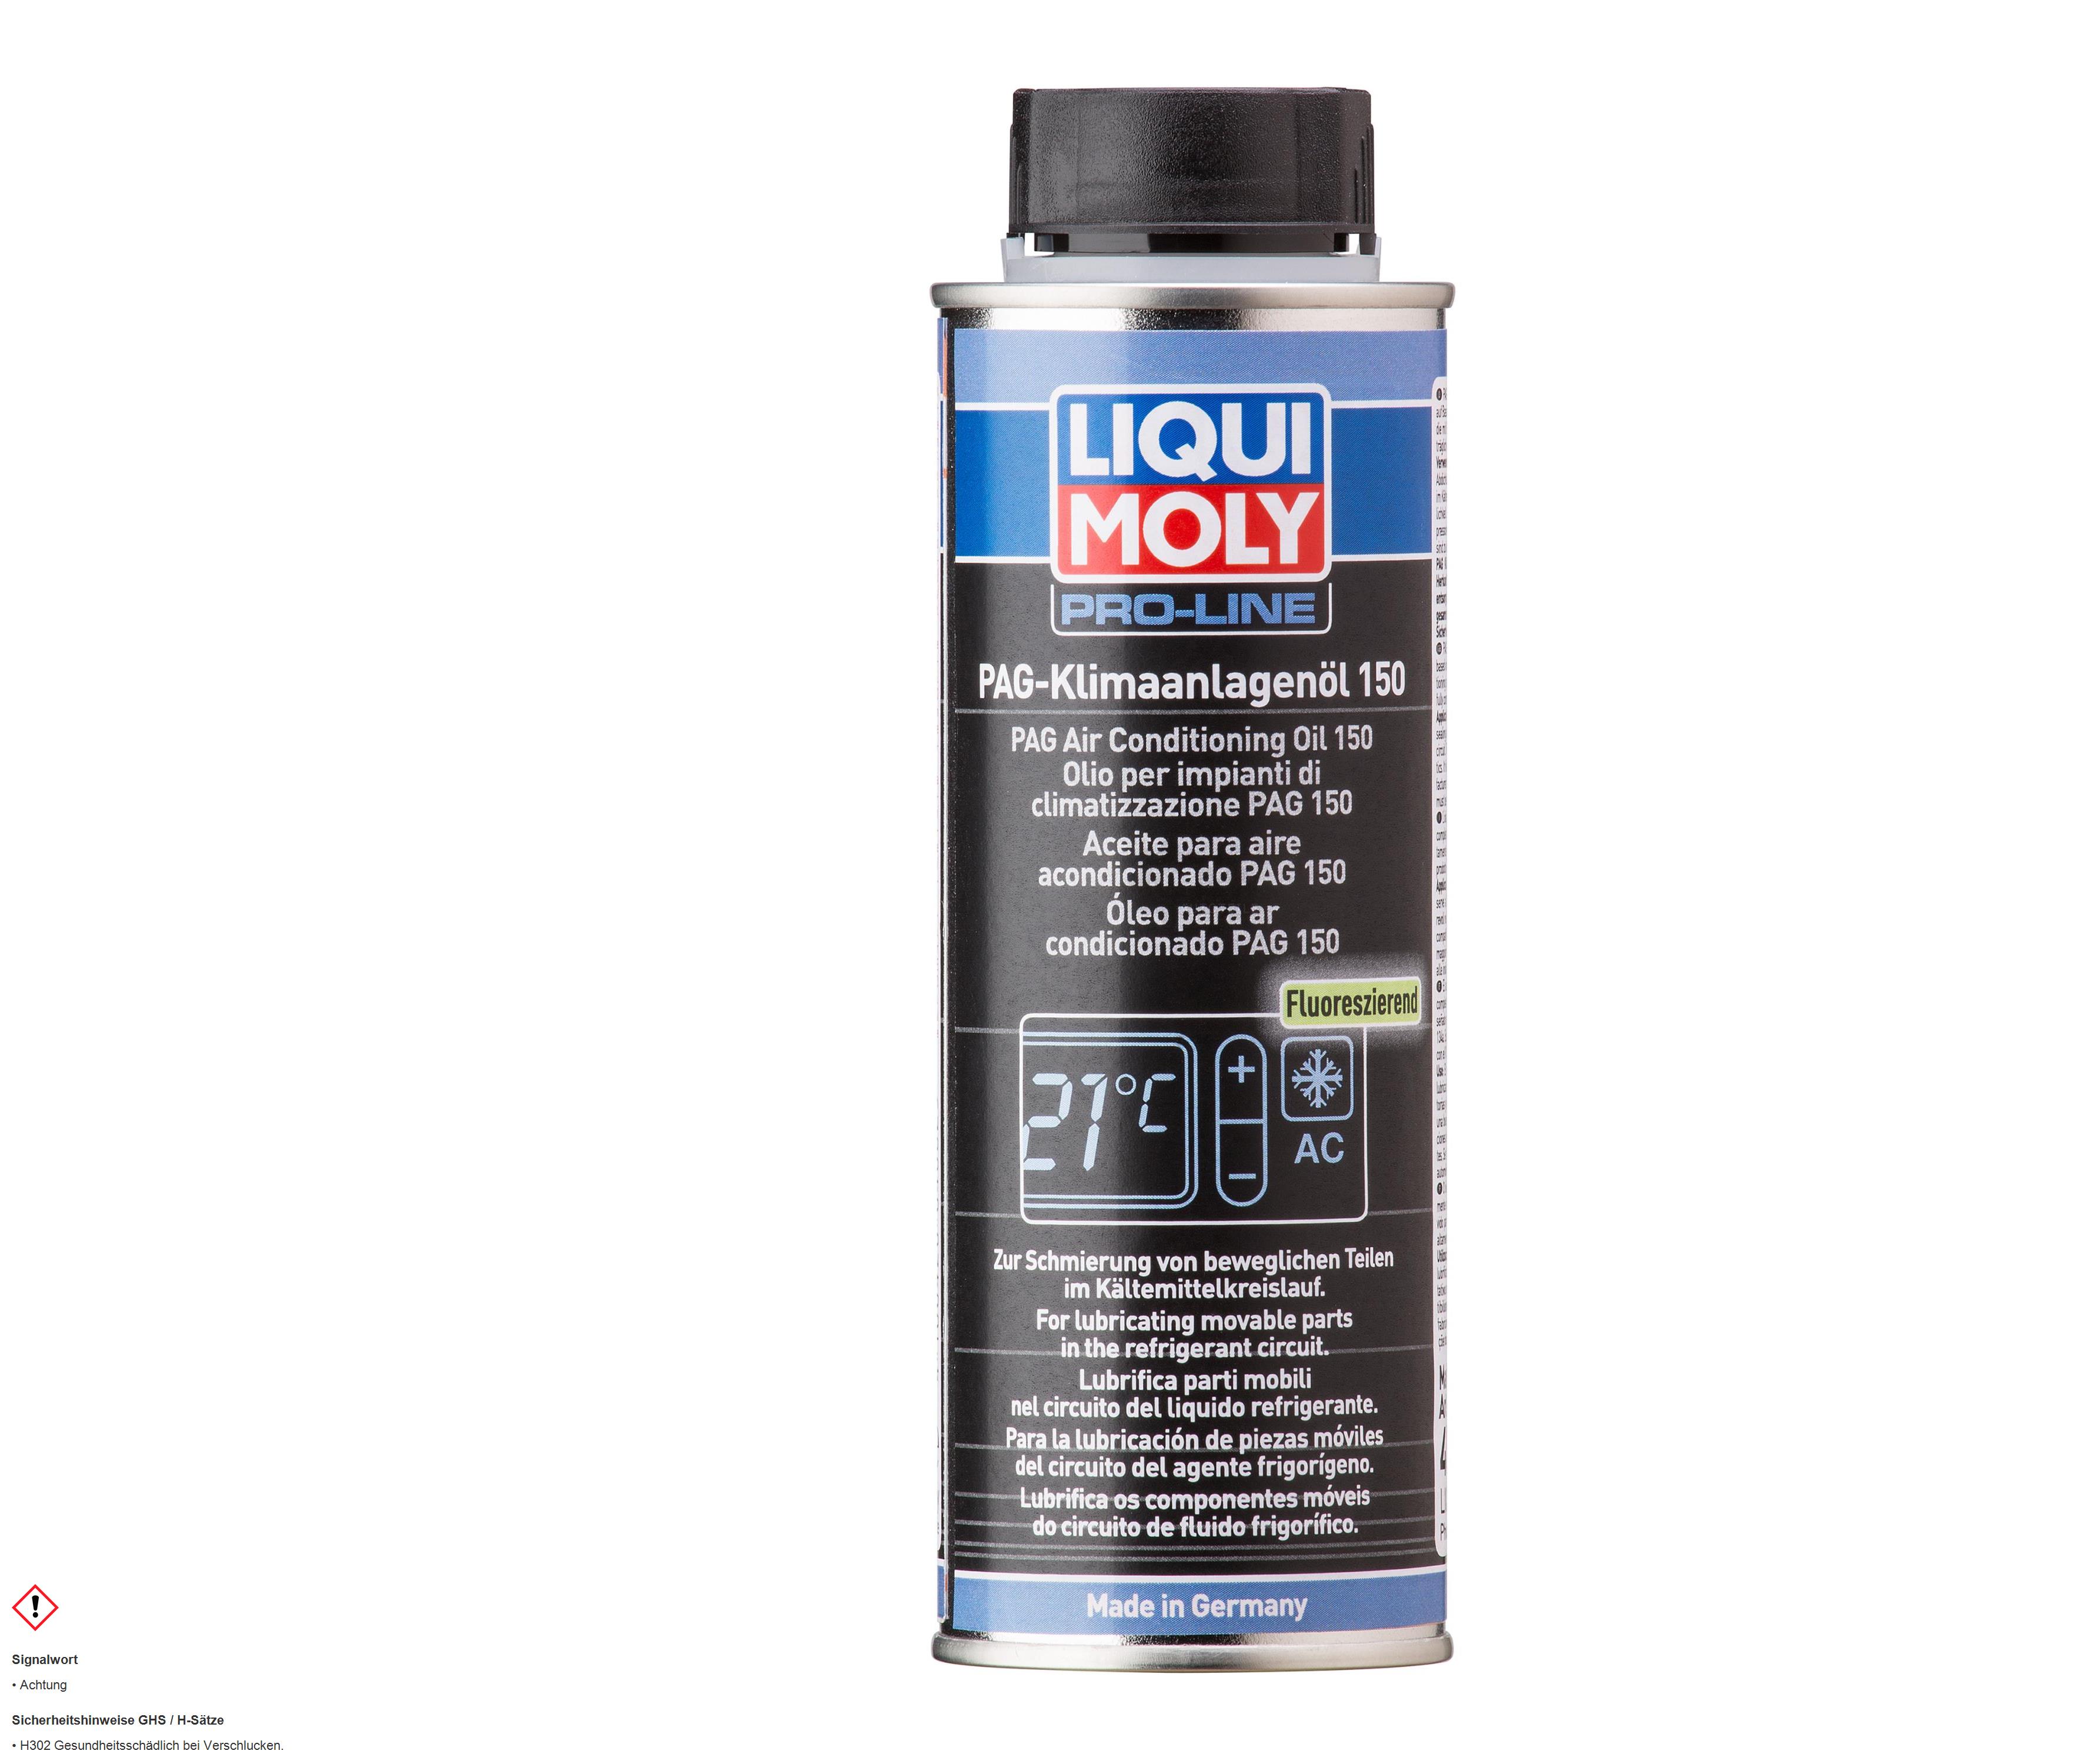 Liqui Moly PAG Klimaanlagenöl 150 R134a Kompressoröl Klima Anlage Öl 250 ml